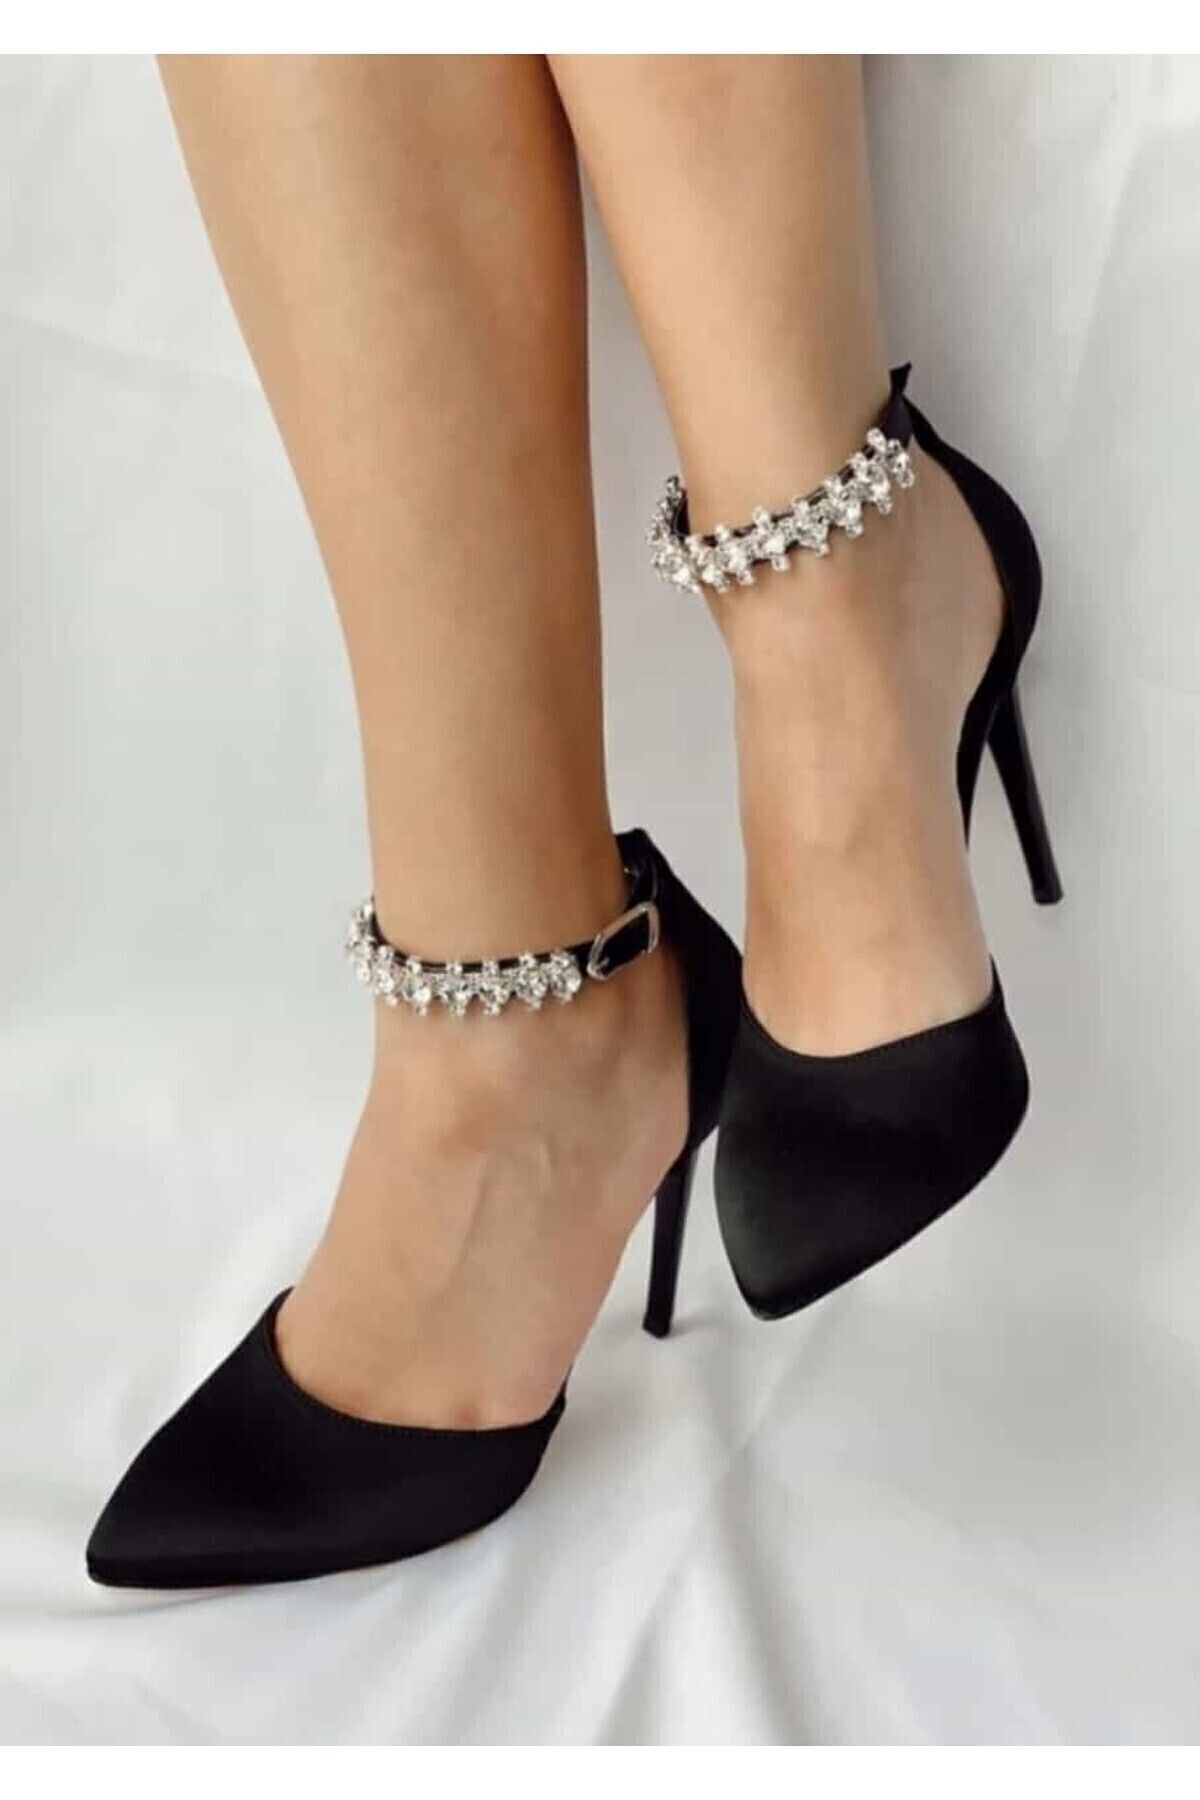 Maldari Siyah Saten Gümüş Taşlı Bantlı Topuklu Ayakkabı